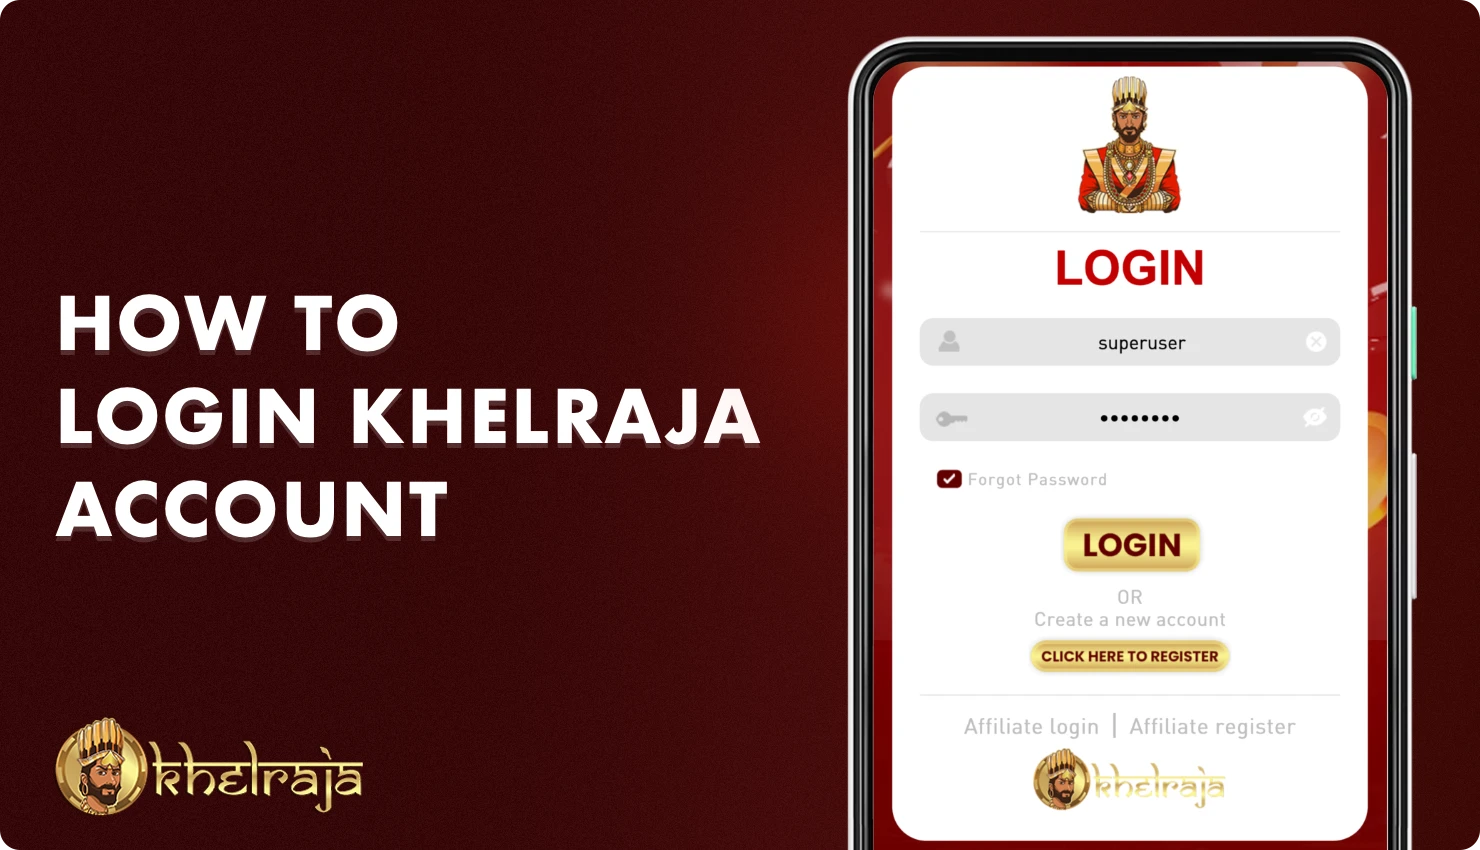 अपने व्यक्तिगत खाते में लॉग इन करने के लिए, भारत के उपयोगकर्ता Khelraja को पंजीकरण के दौरान निर्दिष्ट डेटा का उपयोग करने की आवश्यकता है